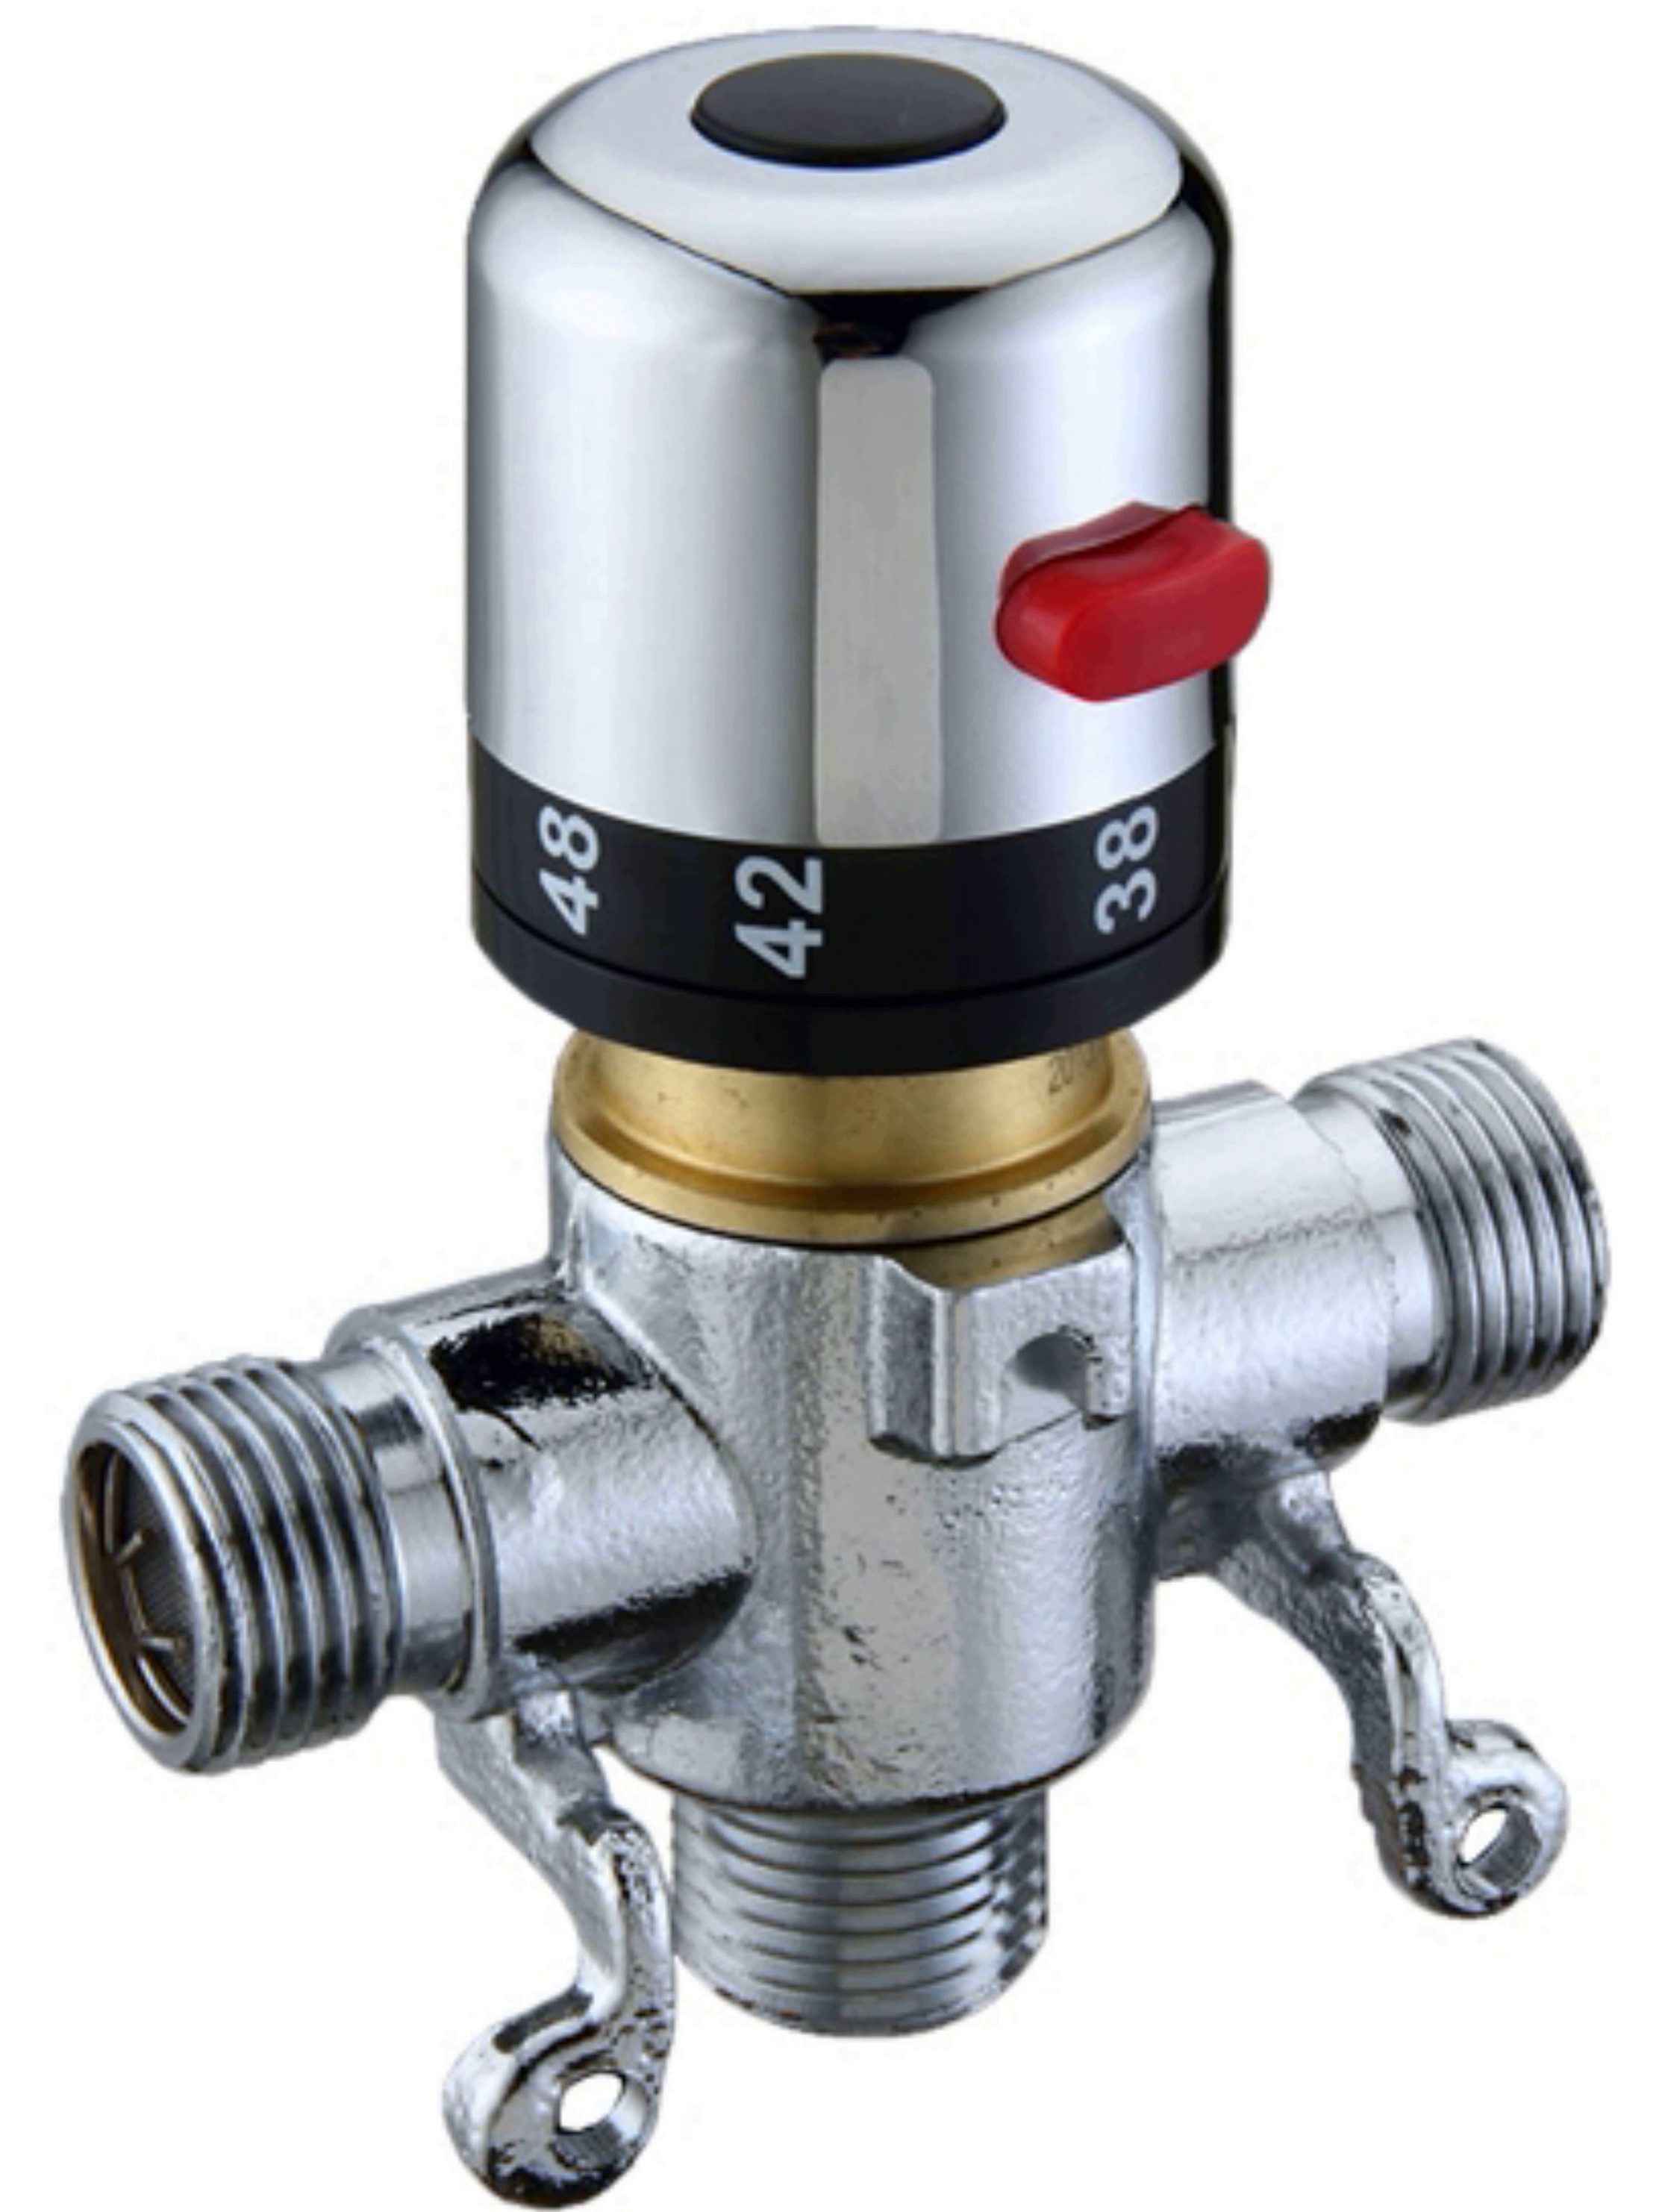 Thermostatic faucet KG 532 12D